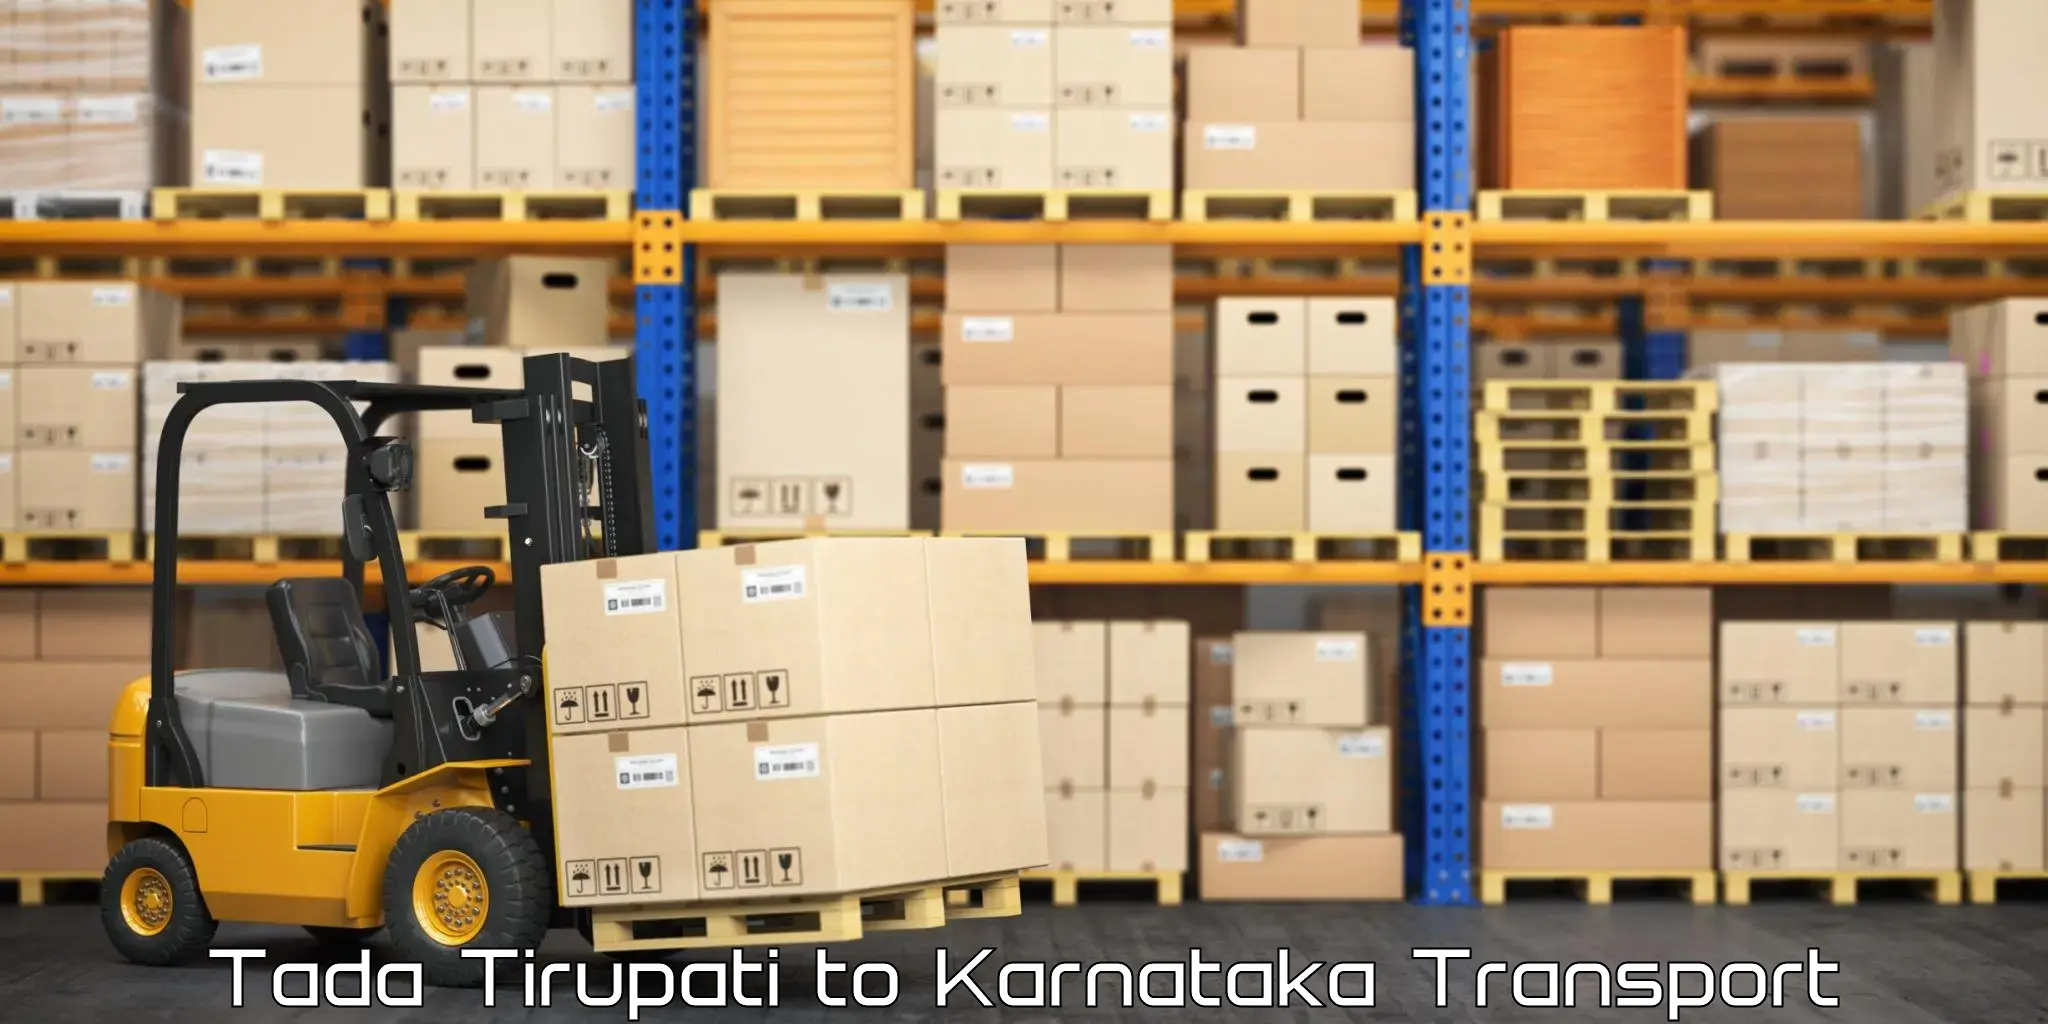 Nearest transport service Tada Tirupati to Kerur